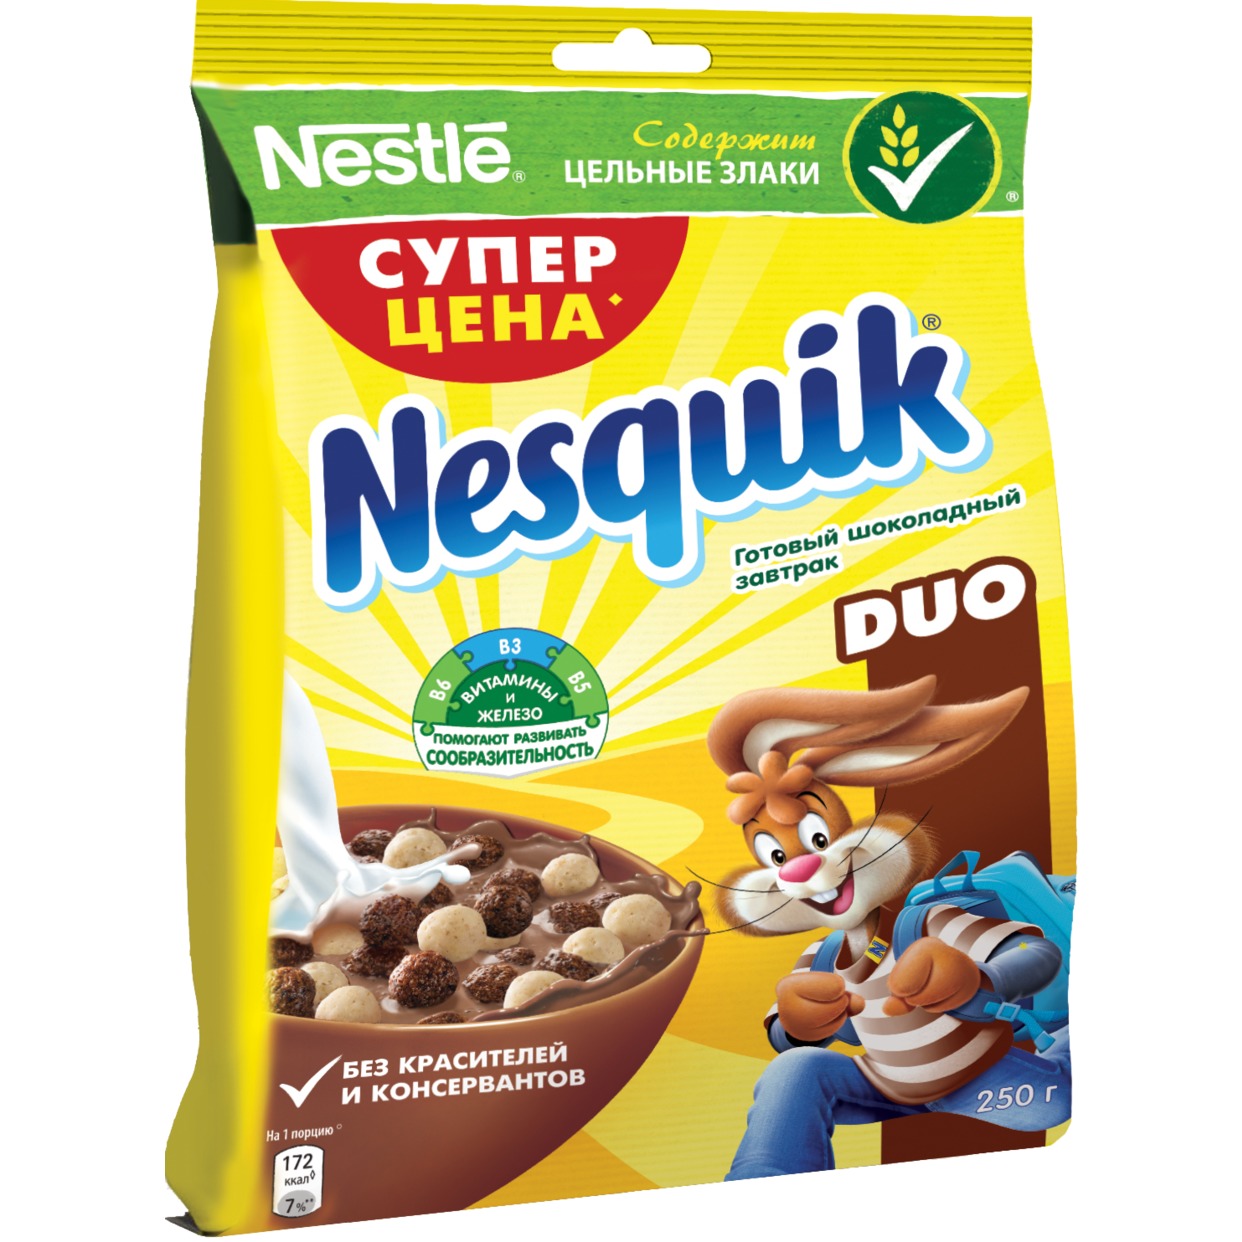 Готовый завтрак Nesquik Duo Шоколадный 250г по акции в Пятерочке